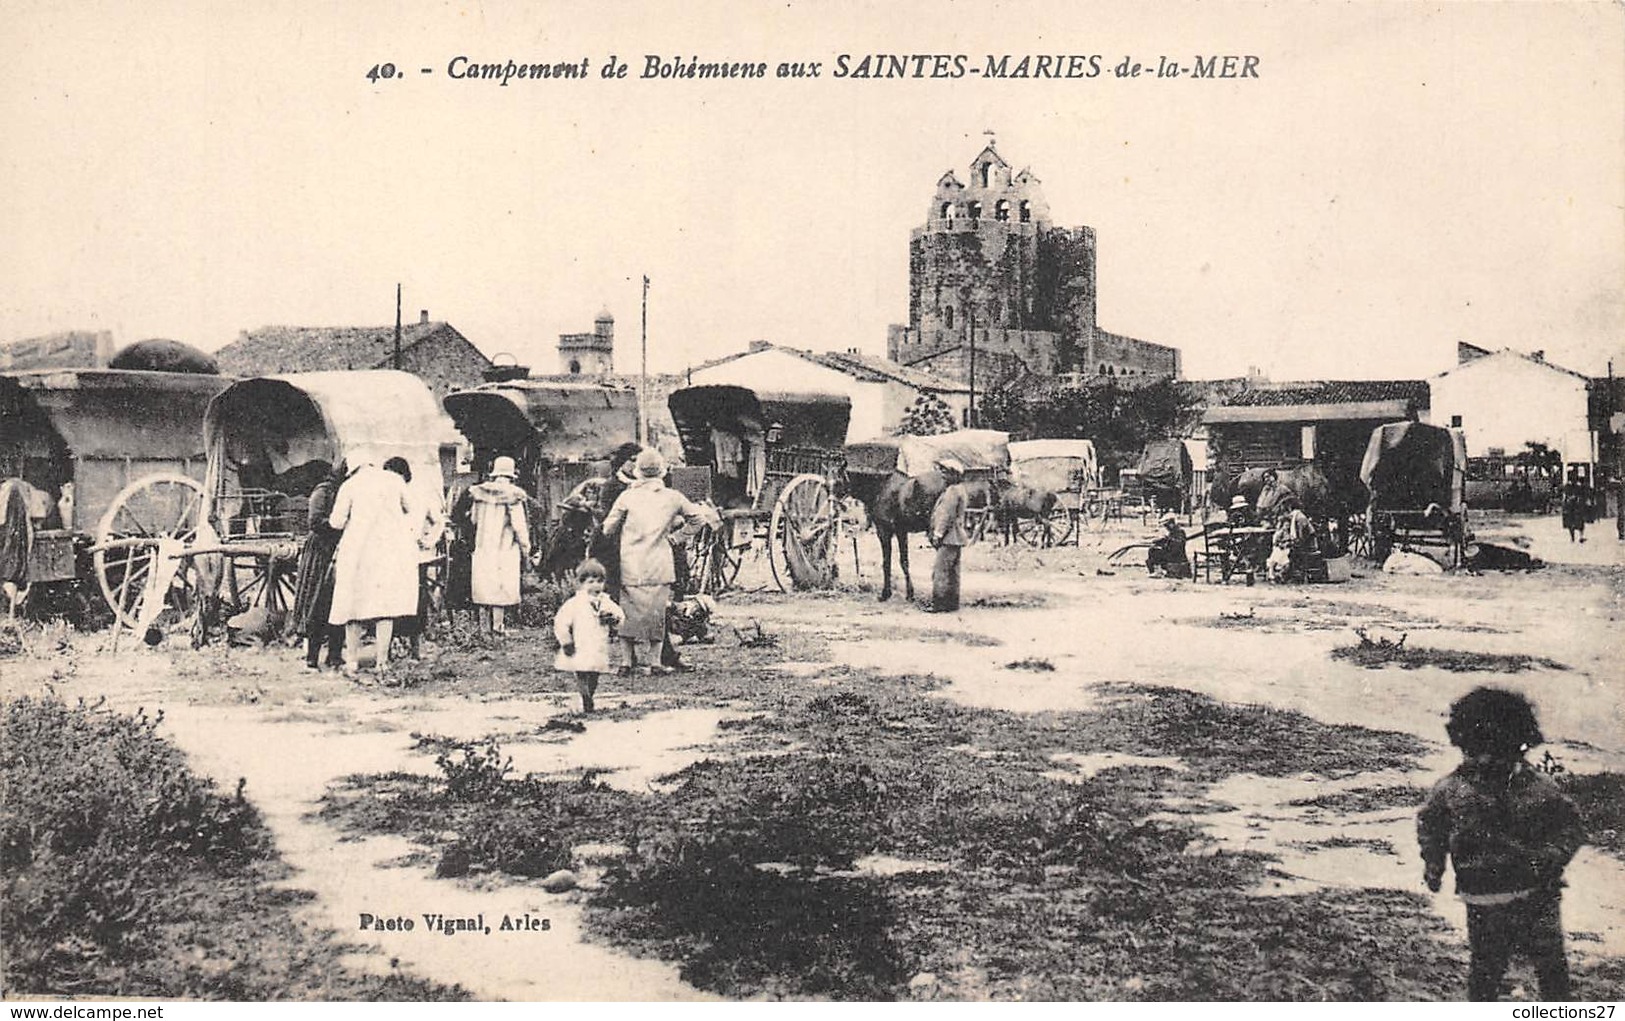 13-SAINTES-MARIES- CAMPEMENT DE BOHEMIENS, AU SAINTES MARIES DE LA MER - Saintes Maries De La Mer